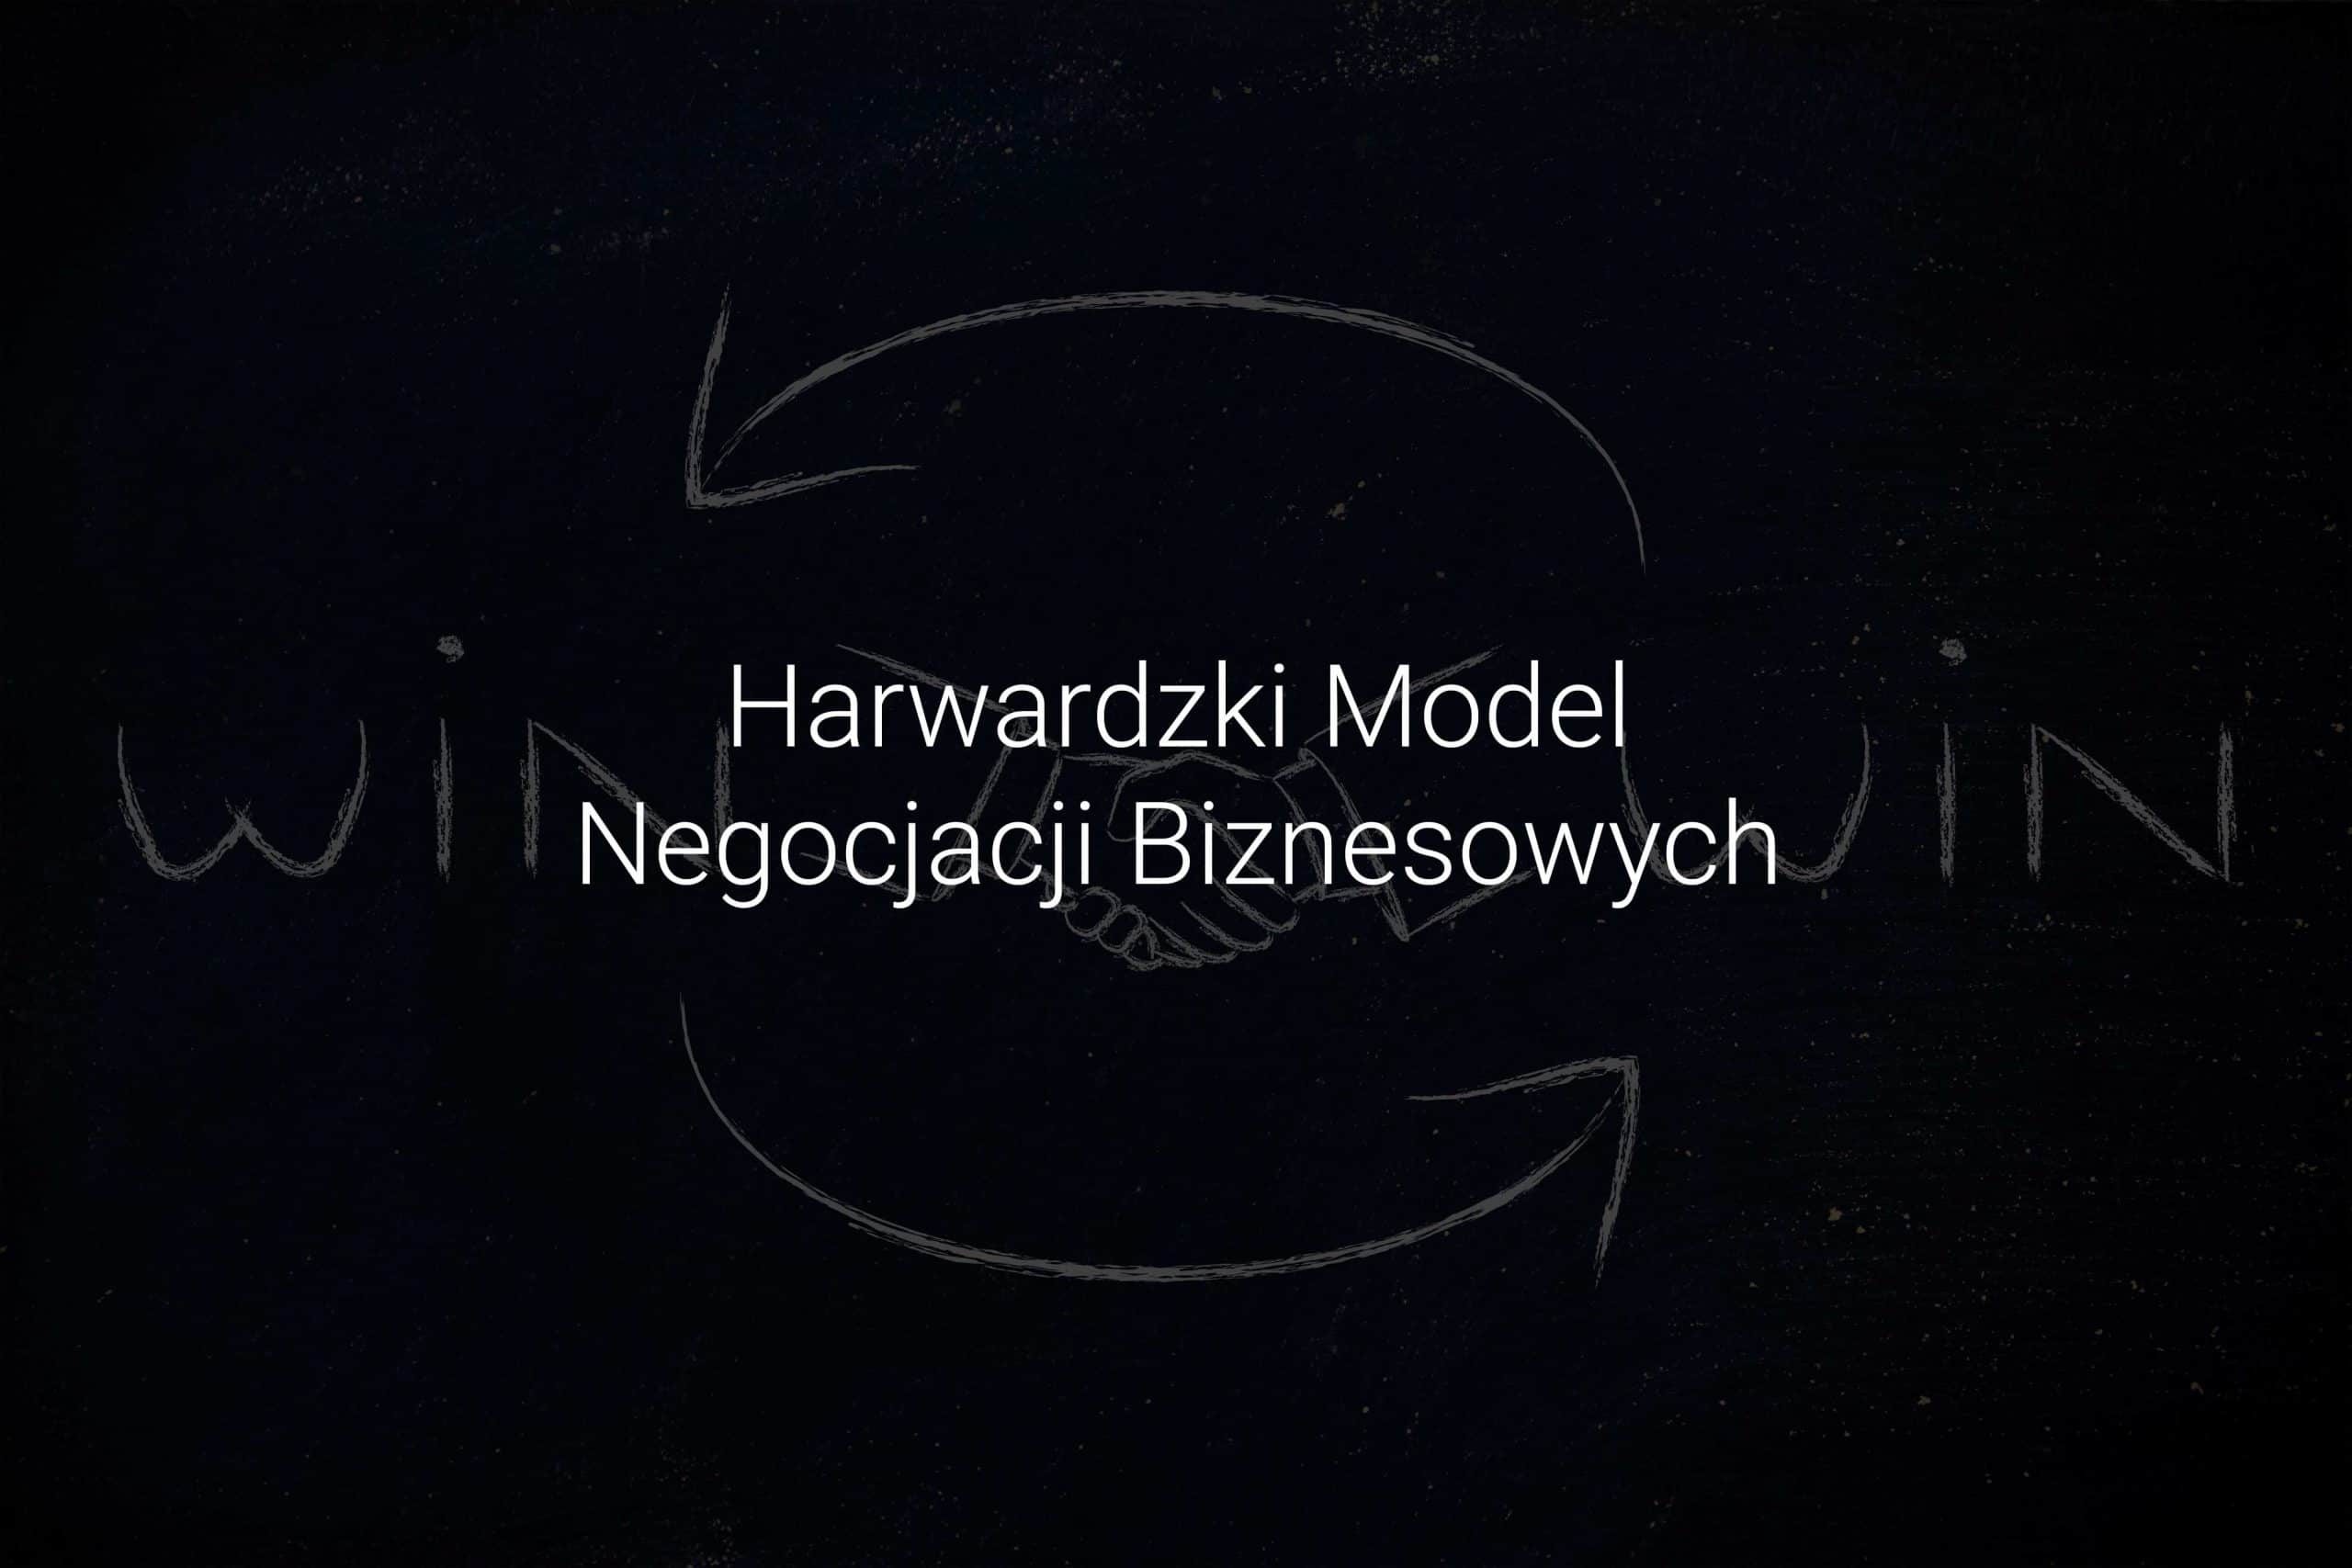 Harwardzki Model Negocjacji - Negocjacje Biznesowe Eveneum